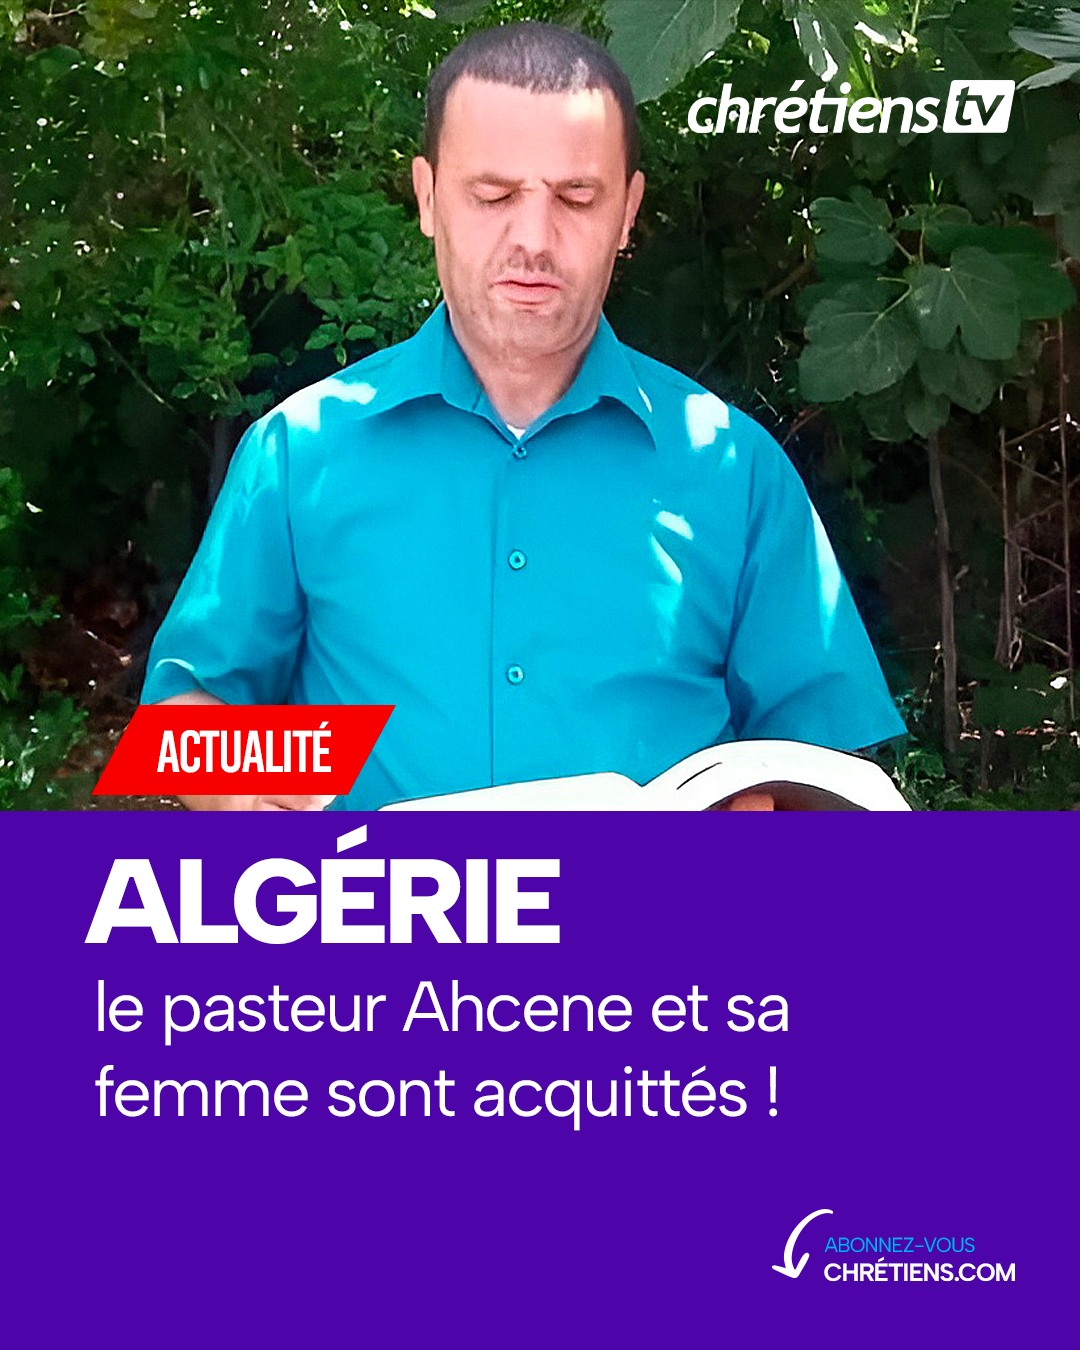 L'acquittement du pasteur Ahcene et de son épouse est une bonne nouvelle pour les chrétiens algériens. Ils ont vu leur peine de 1 an de prison annulée par la justice algérienne.